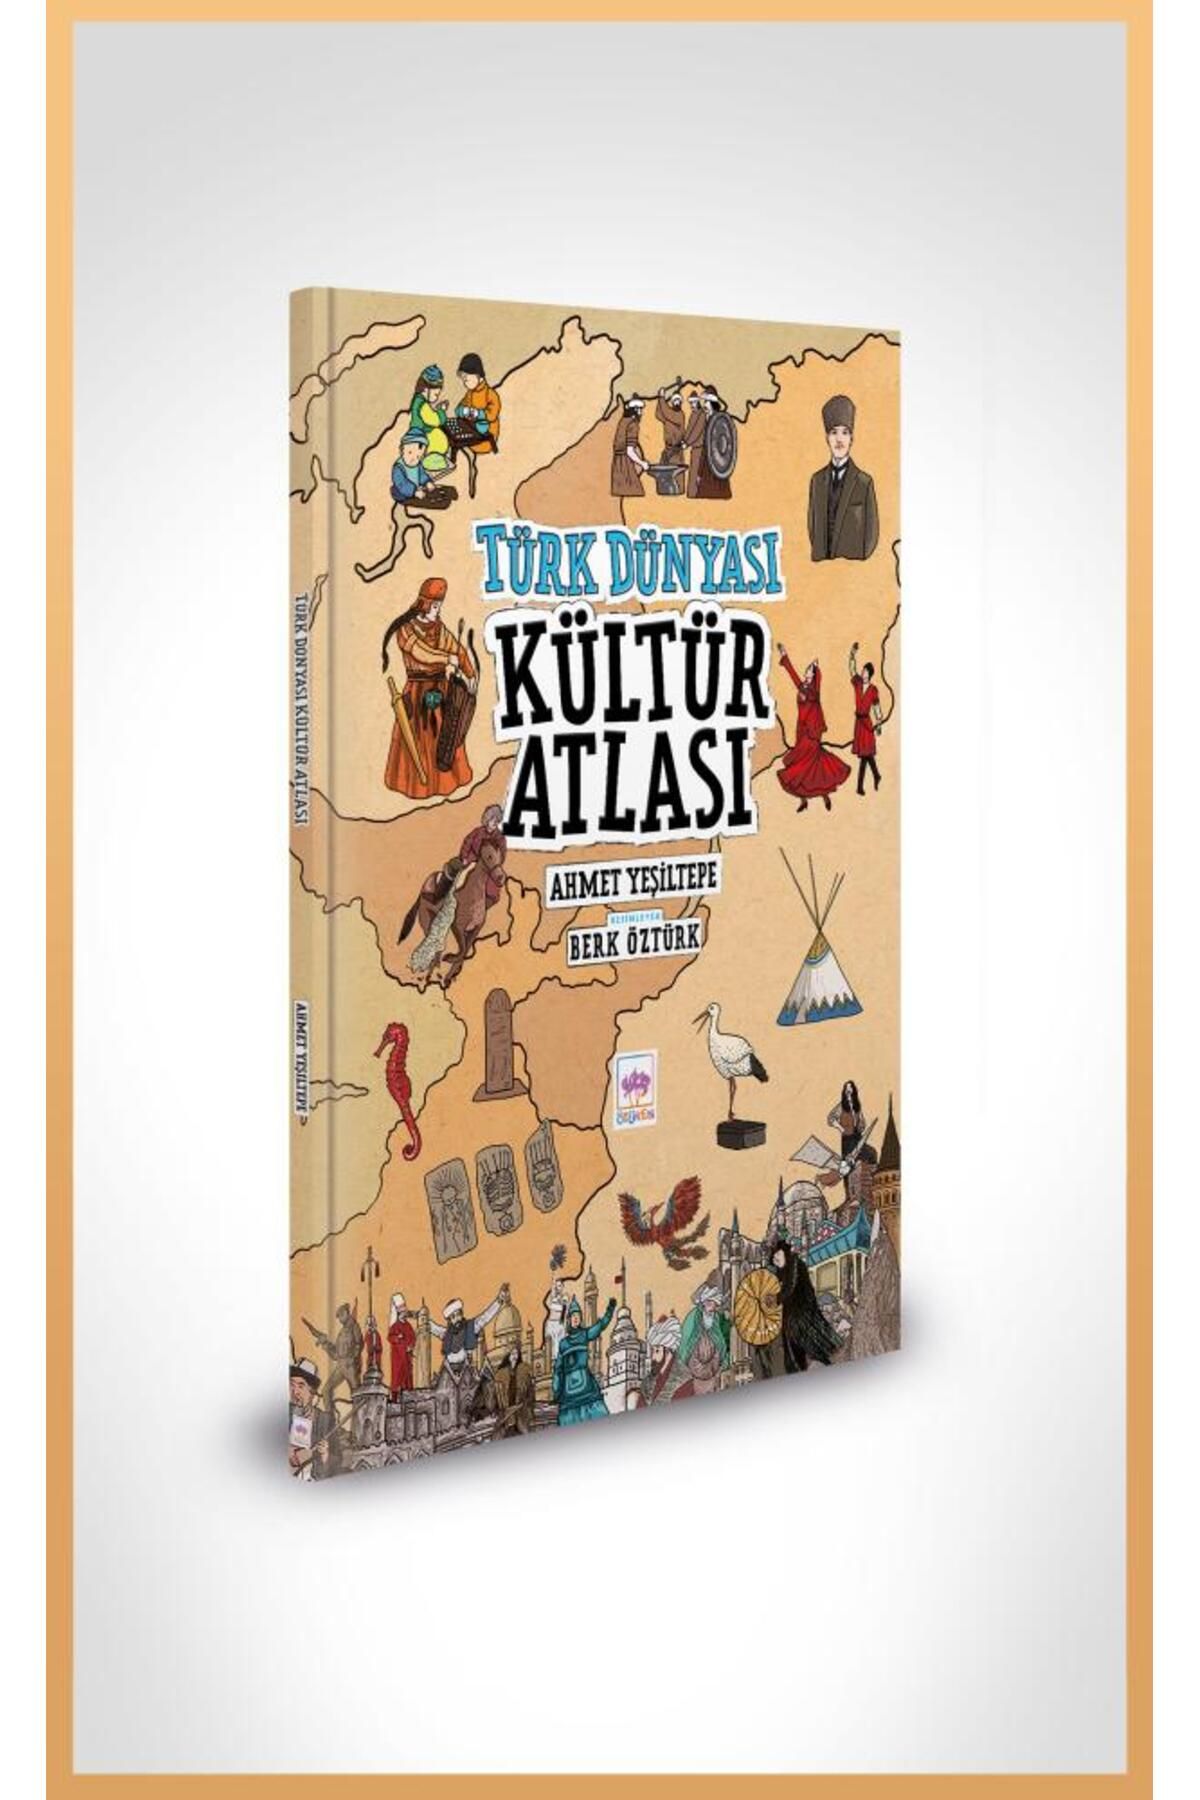 Ötüken Neşriyat Türk Dünyası Kültür Atlası / Ahmet Yeşiltepe